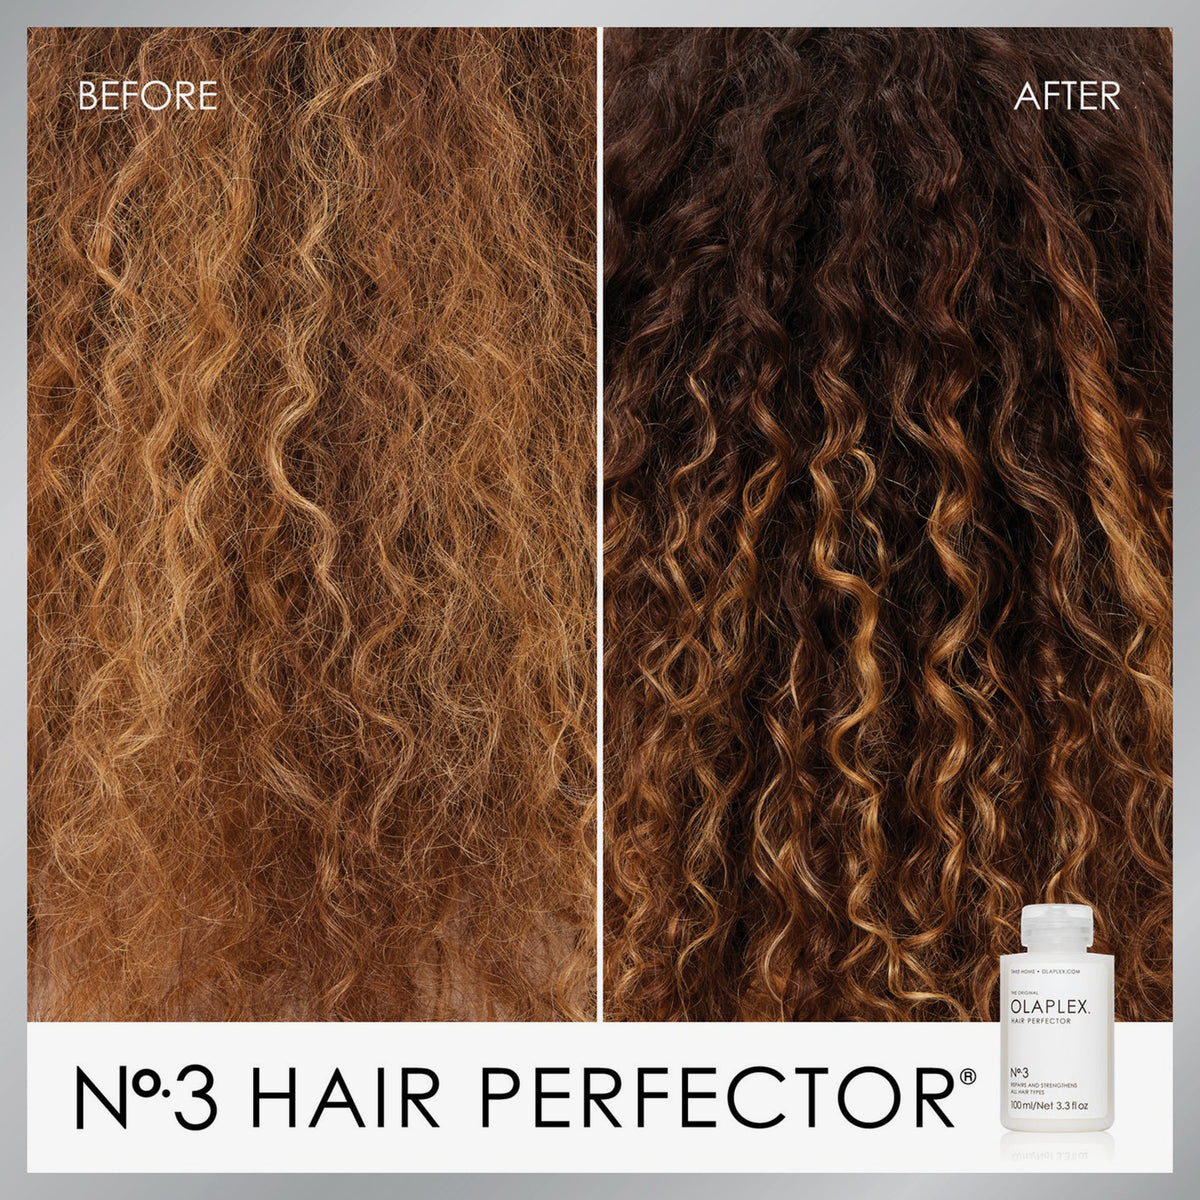 Vorher/Nachher Vergleich mit OLAPLEX No.3 Hair Perfector bei braunen, lockigen Haaren.